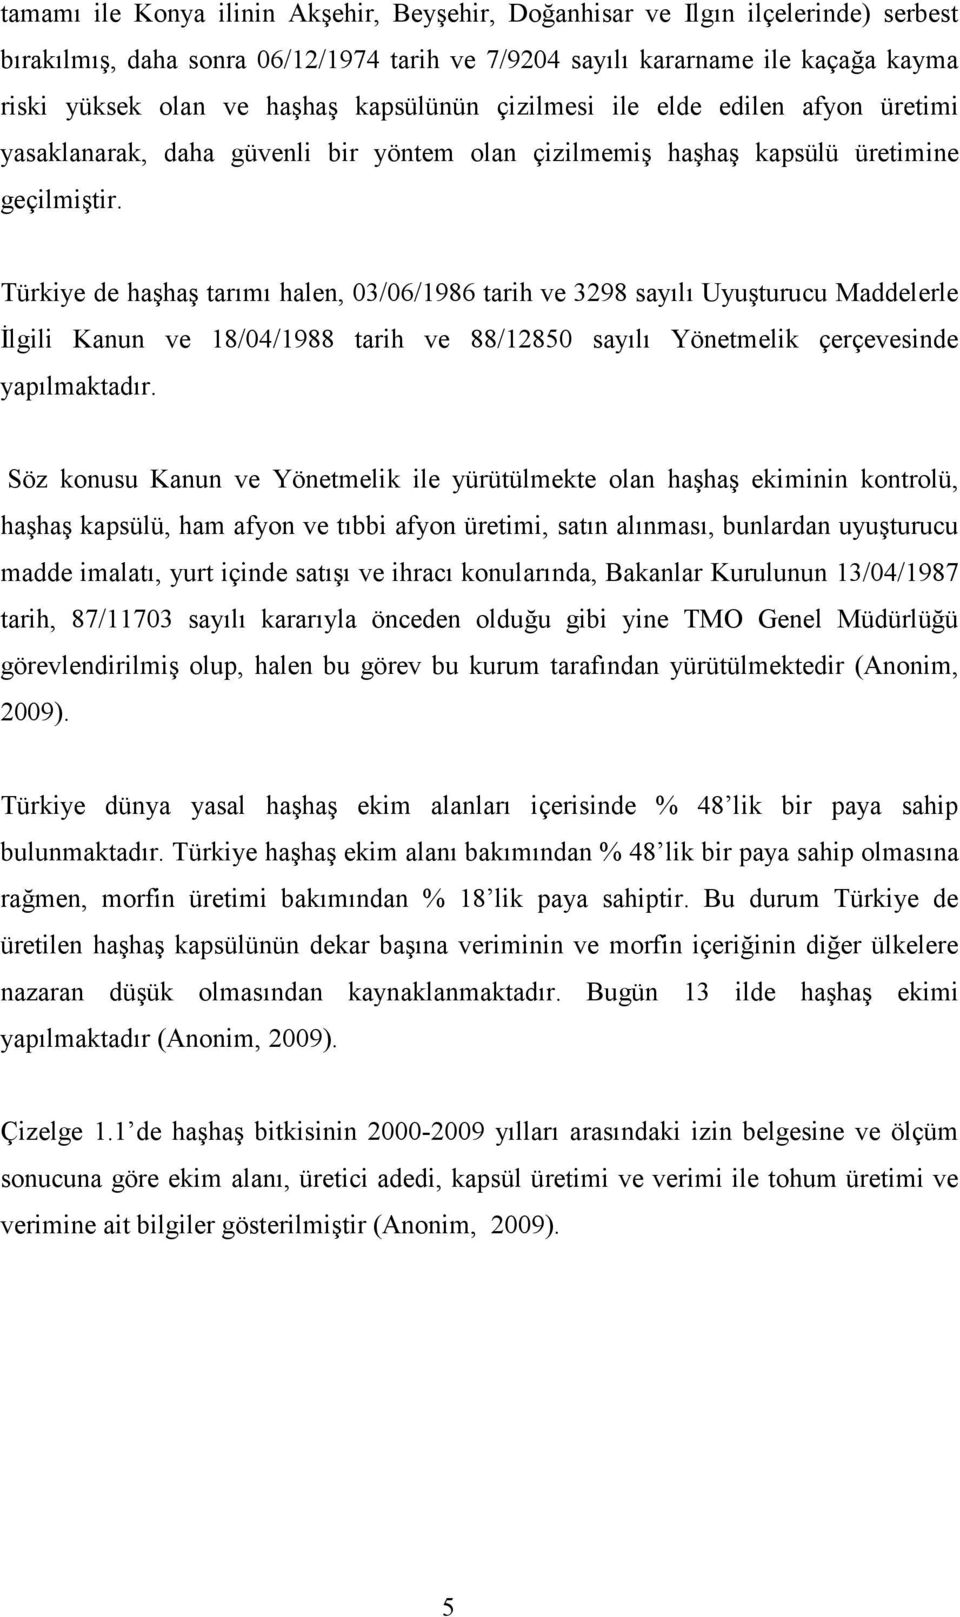 Türkiye de haşhaş tarımı halen, 03/06/1986 tarih ve 3298 sayılı Uyuşturucu Maddelerle İlgili Kanun ve 18/04/1988 tarih ve 88/12850 sayılı Yönetmelik çerçevesinde yapılmaktadır.